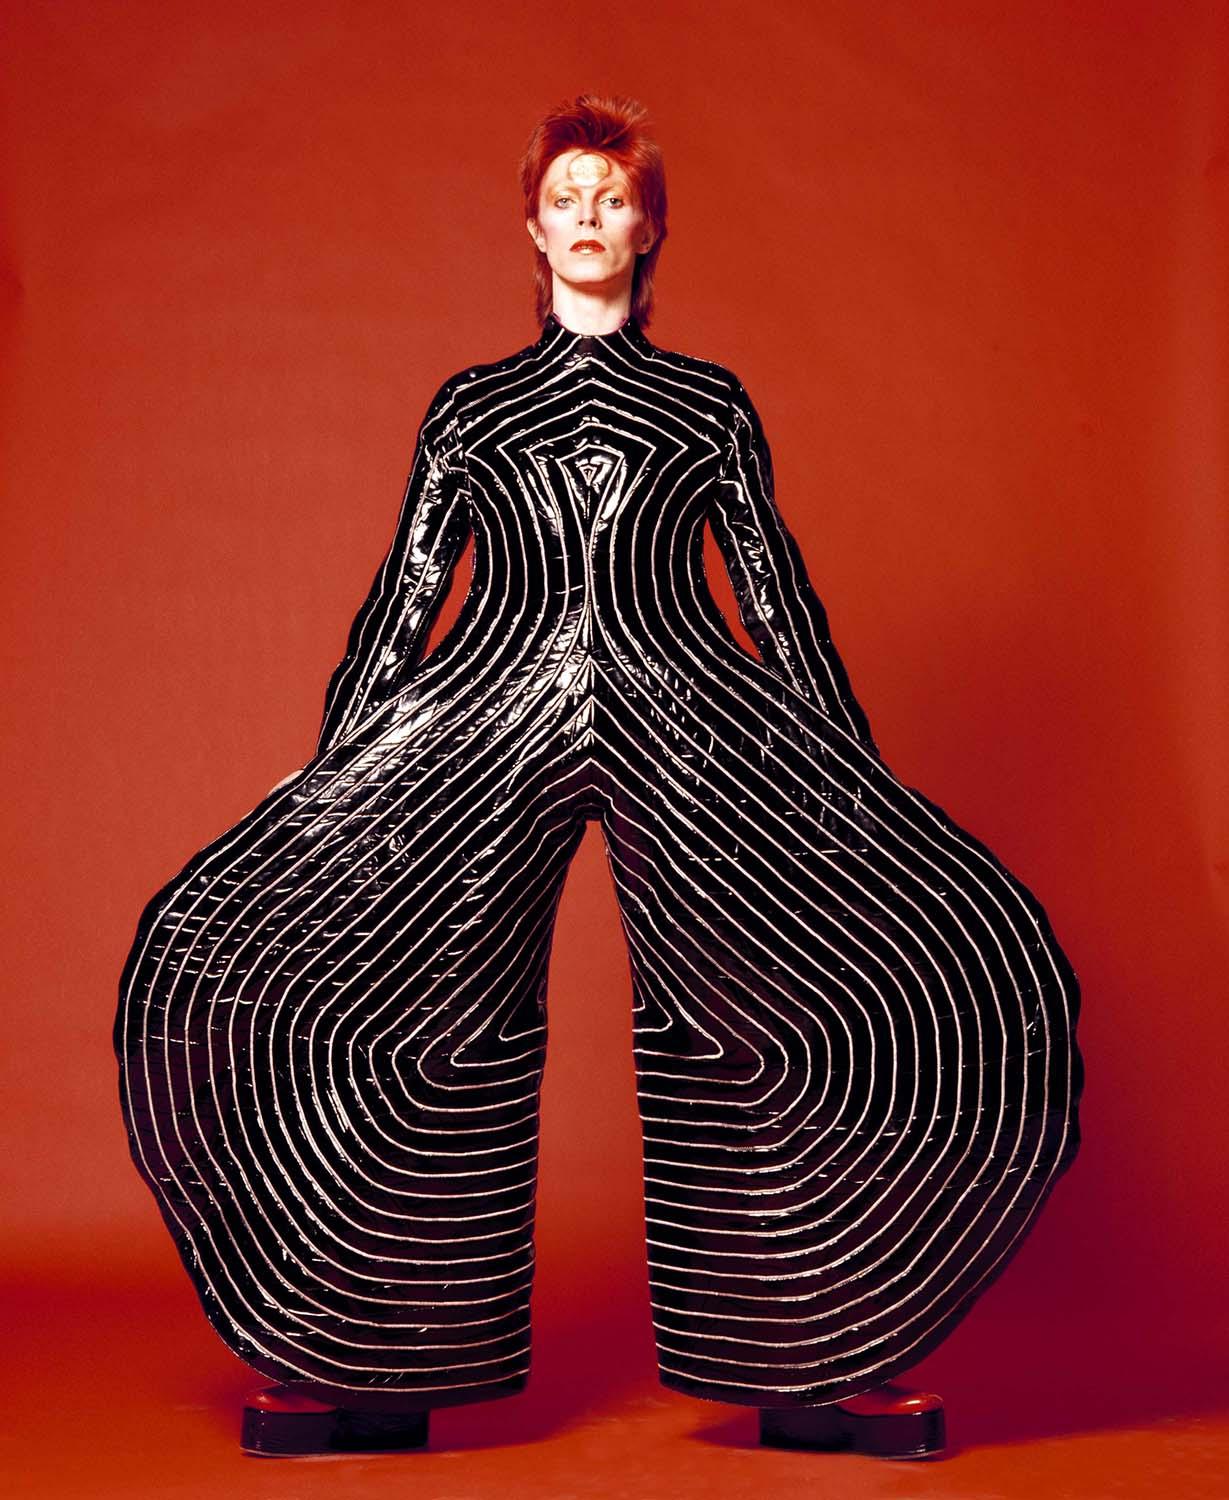 David Bowie Paper Doll Design by Kansai Yamamoto. Masayoshi Sukita _7876 –  Every record tells a story